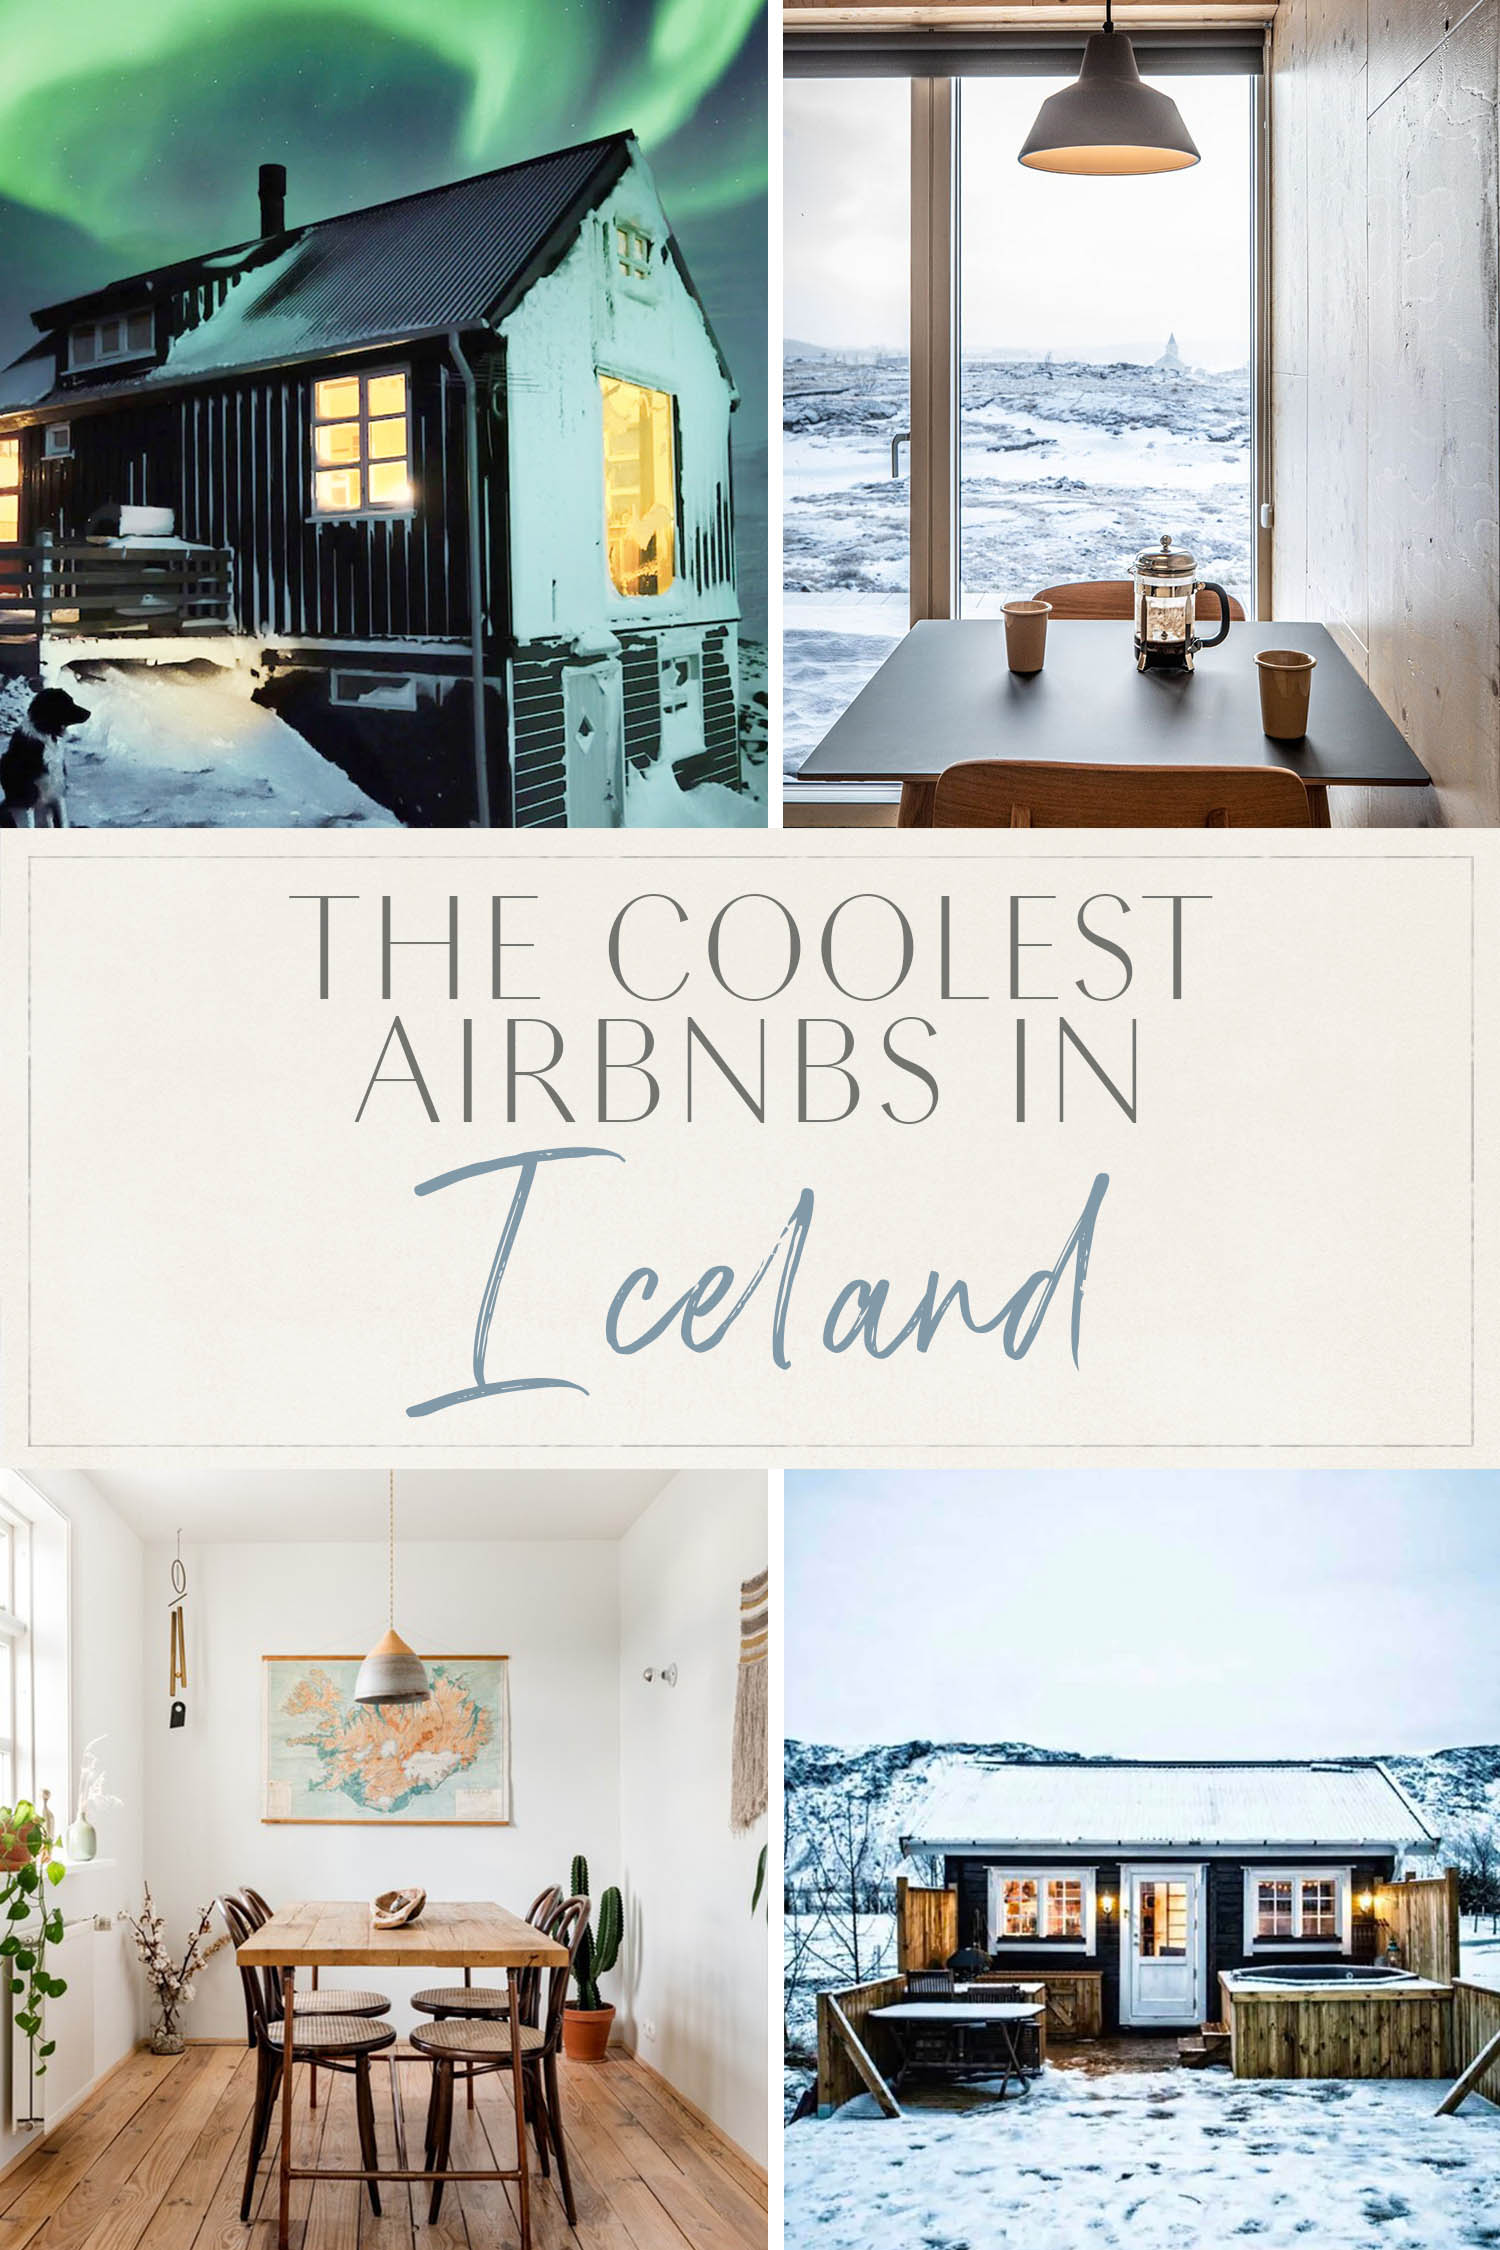 Šauniausi Airbnbs Islandijoje